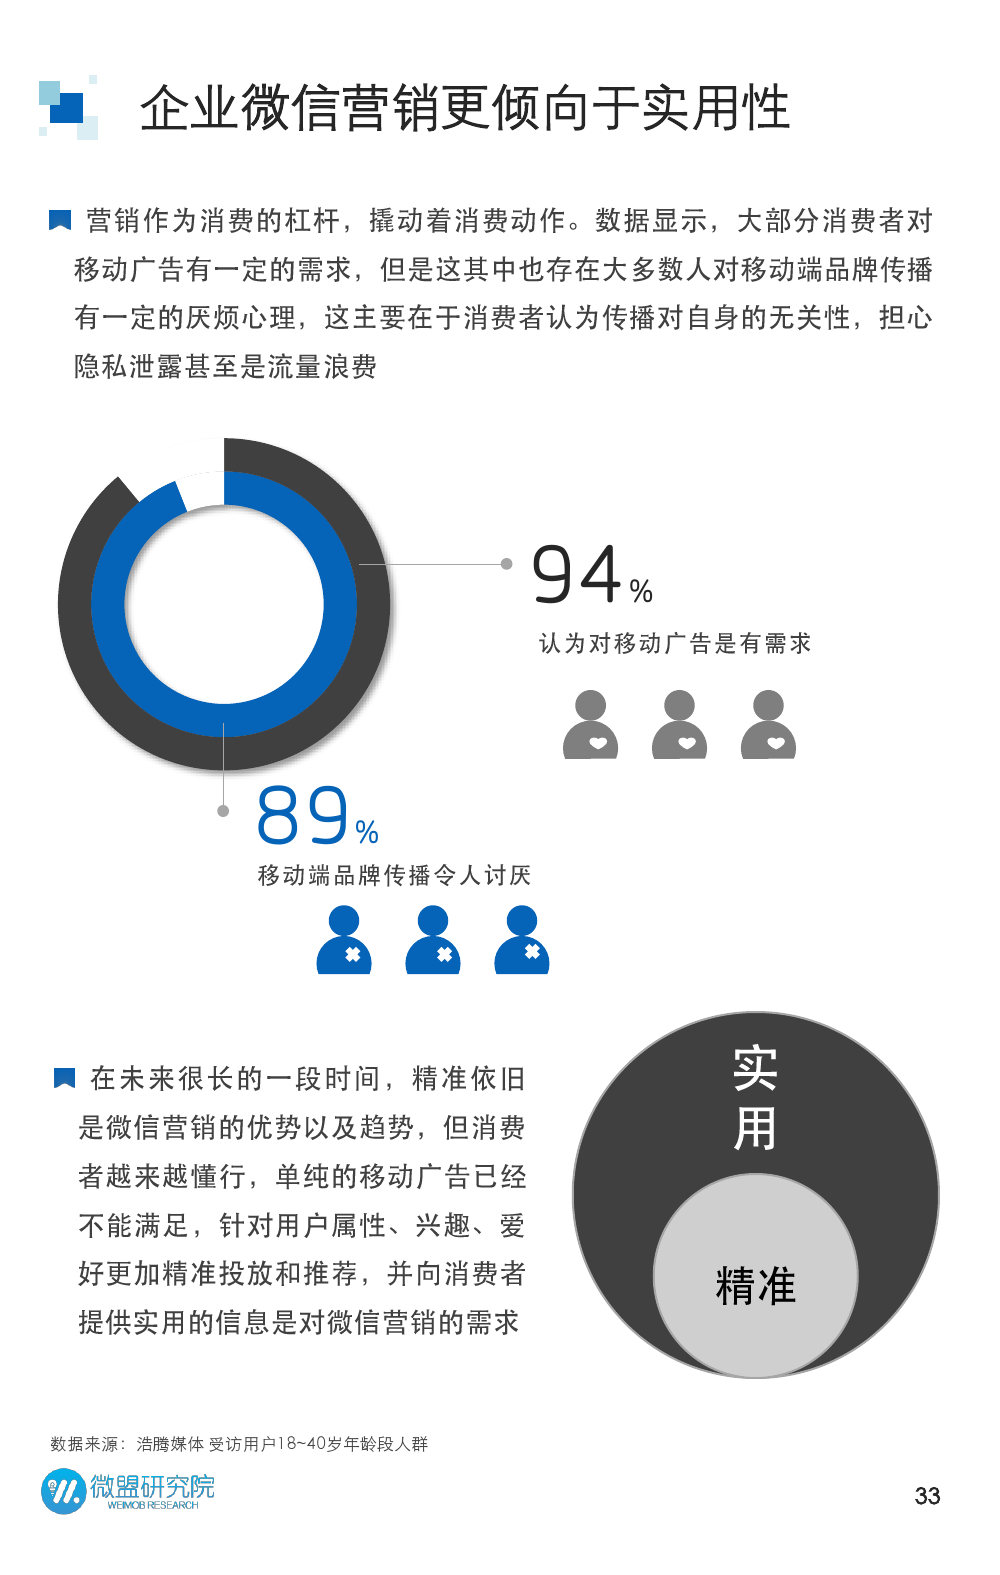 2015年微信营销研究报告_000033